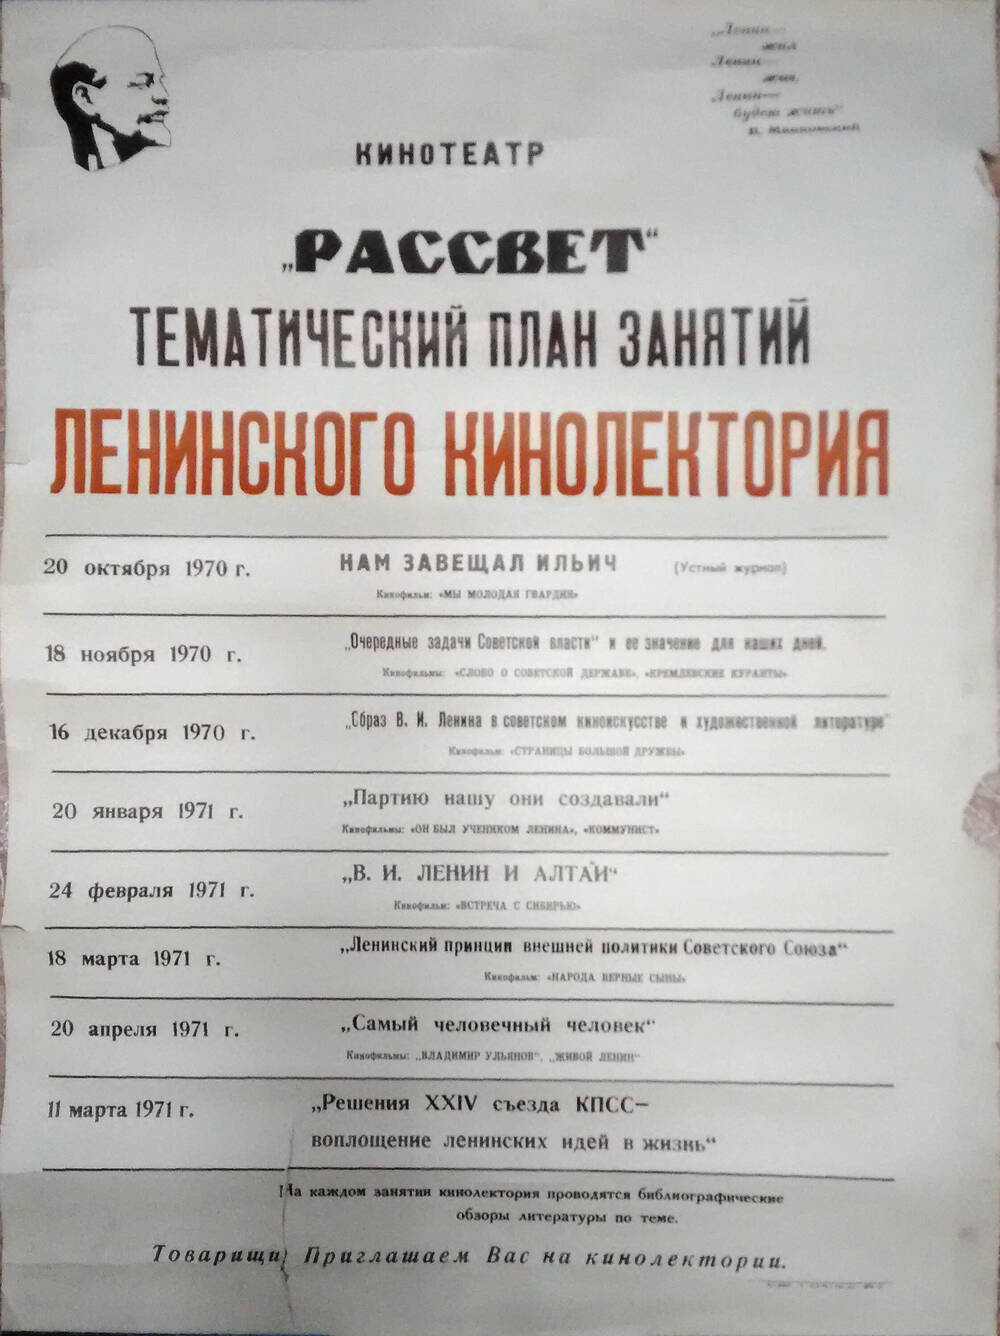 Плакат «Тематический план занятий Ленинского кинолектория кинотеатра Рассвет»